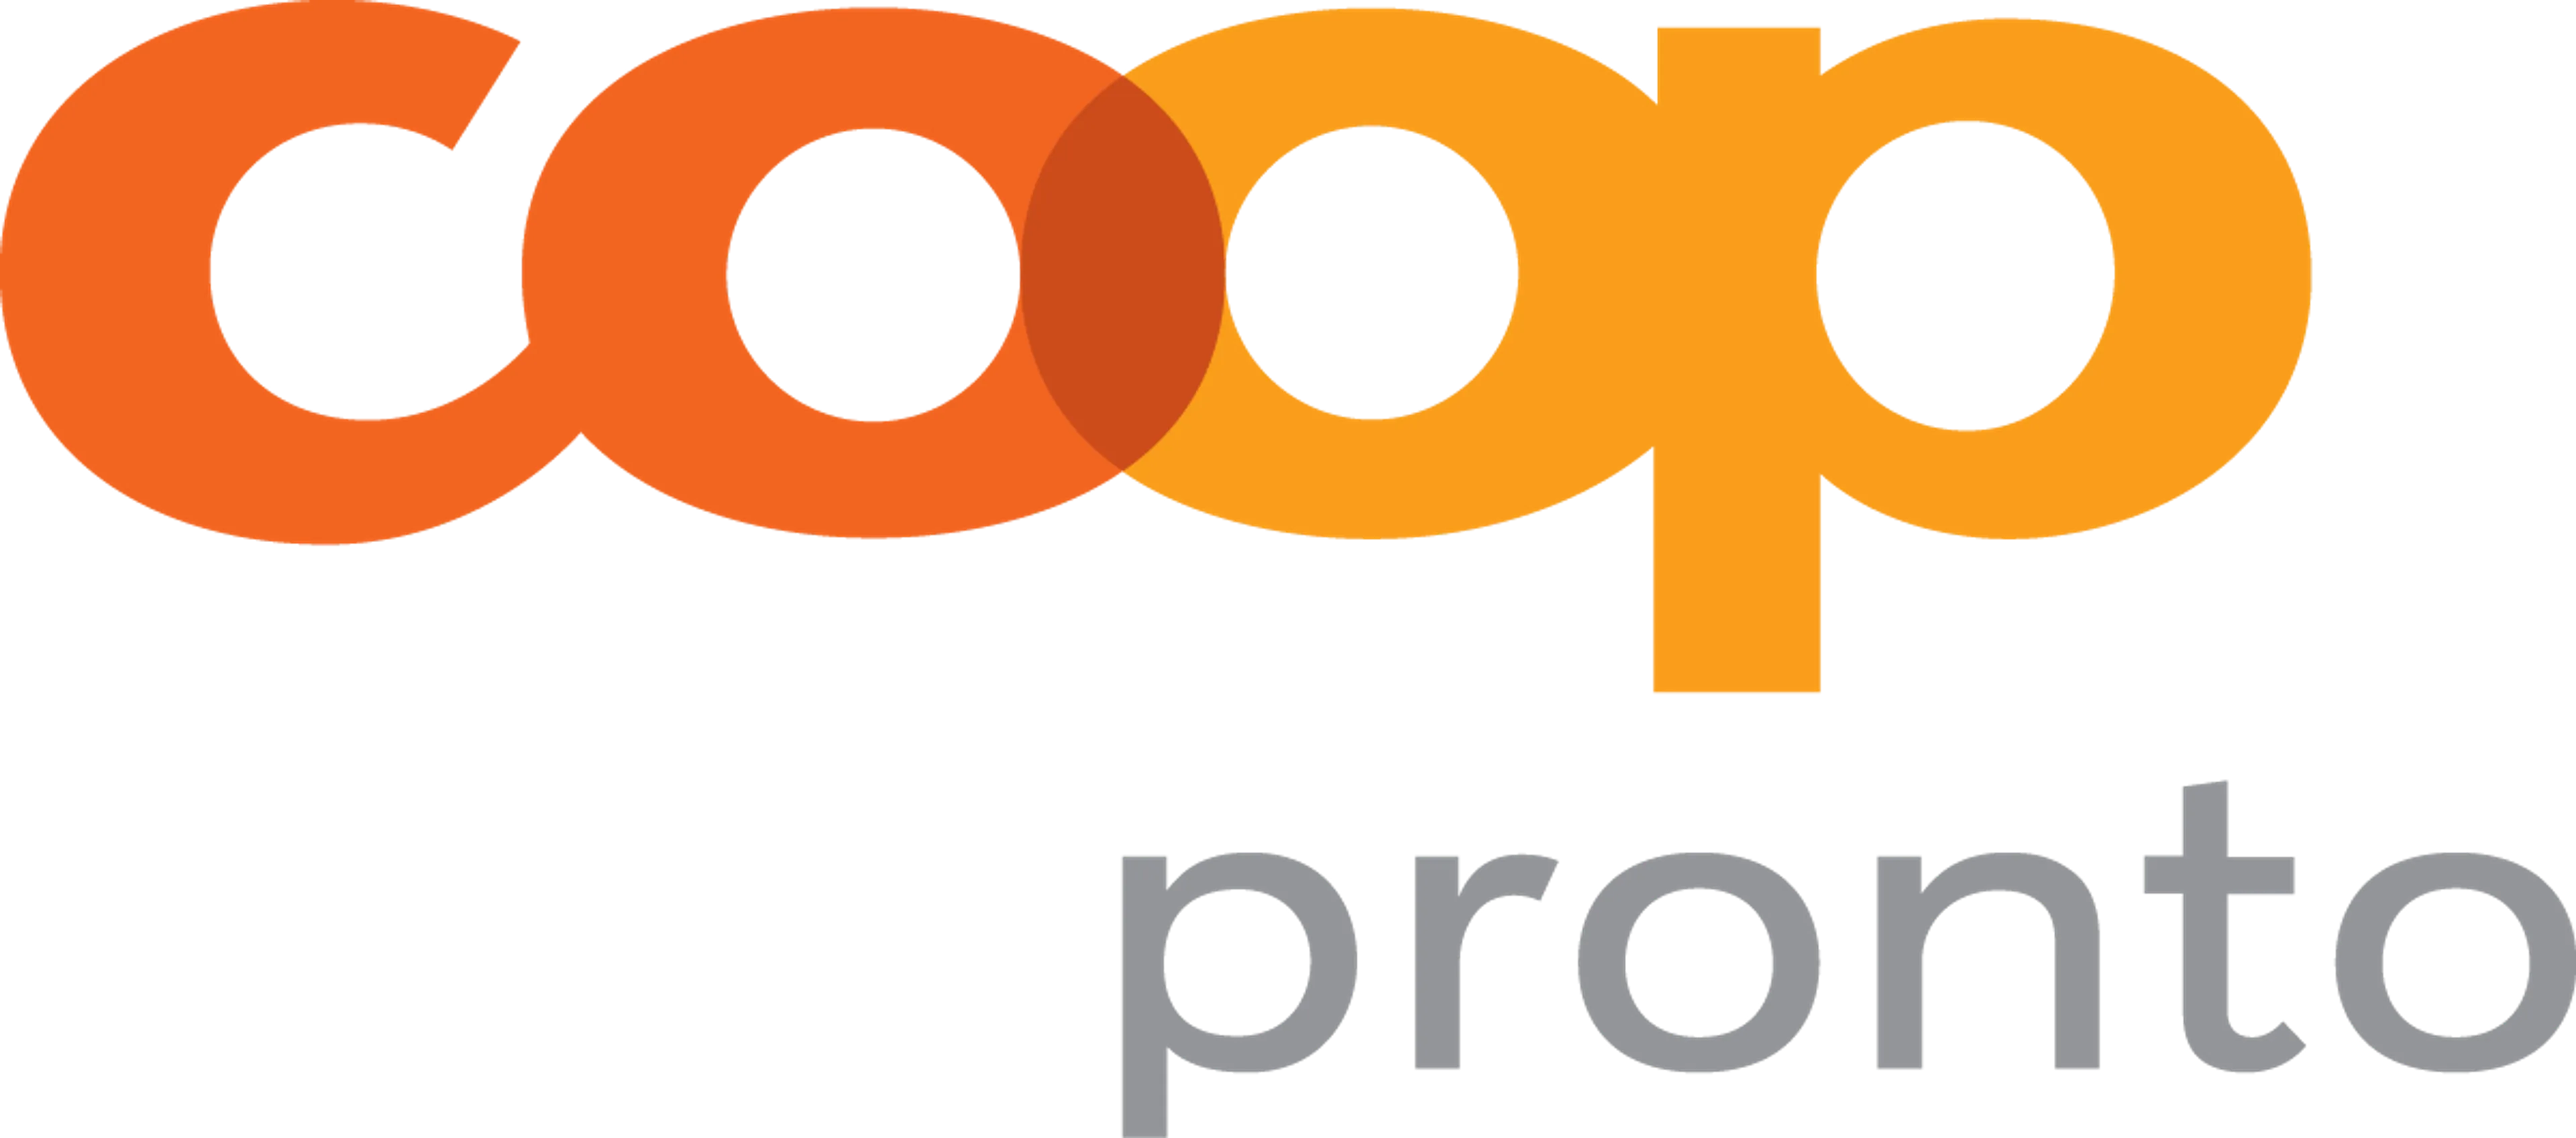 COOP PRONTO logo